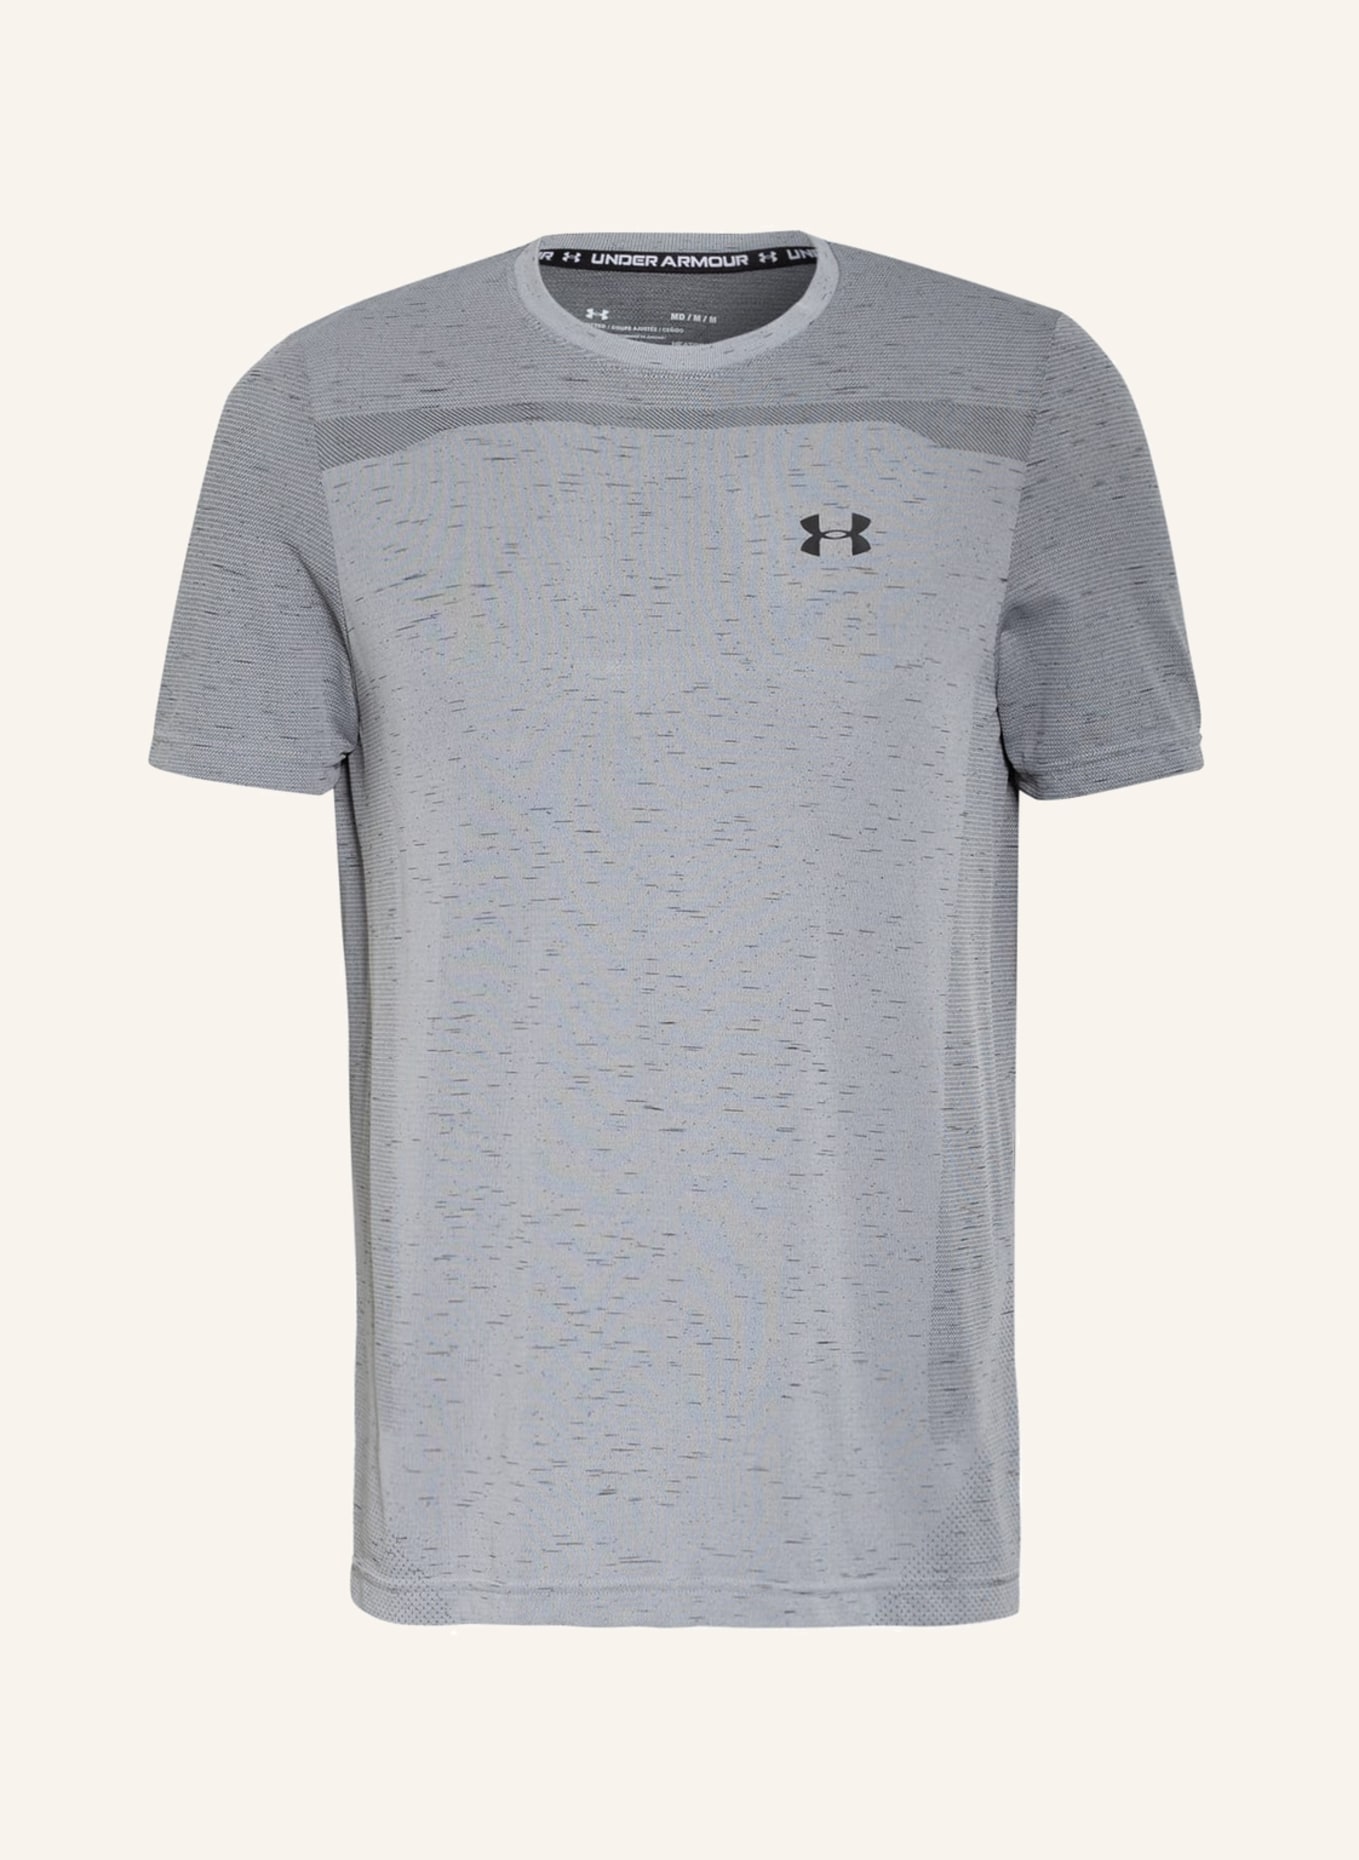 UNDER ARMOUR T-Shirt, Farbe: GRAU/ DUNKELGRAU (Bild 1)